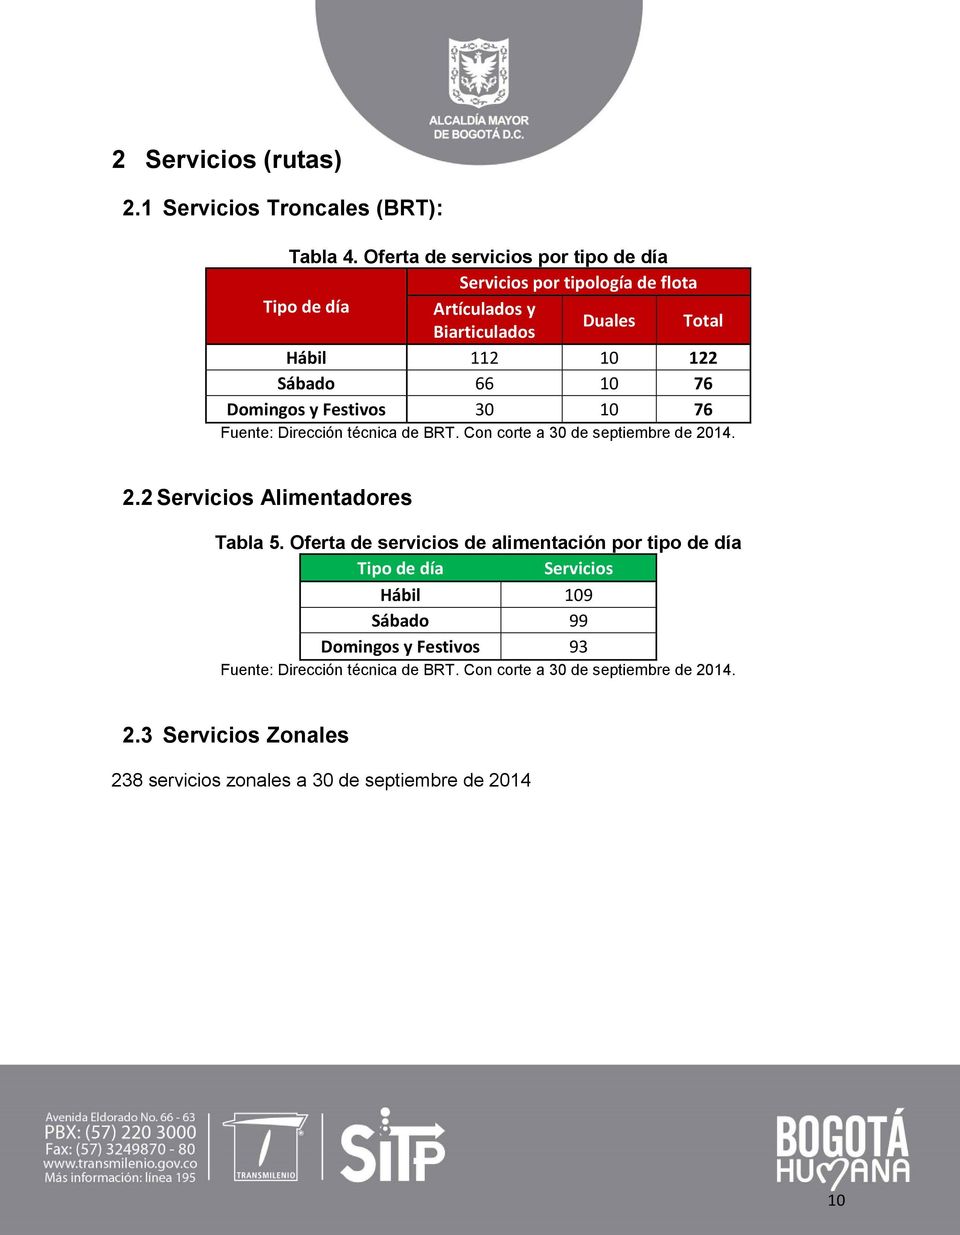 76 Domingos y Festios 30 10 76 Fuente: Dirección técnica de BRT. Con corte a 30 de septiembre de 2014. 2.2 Sericios Alimentadores Tabla 5.